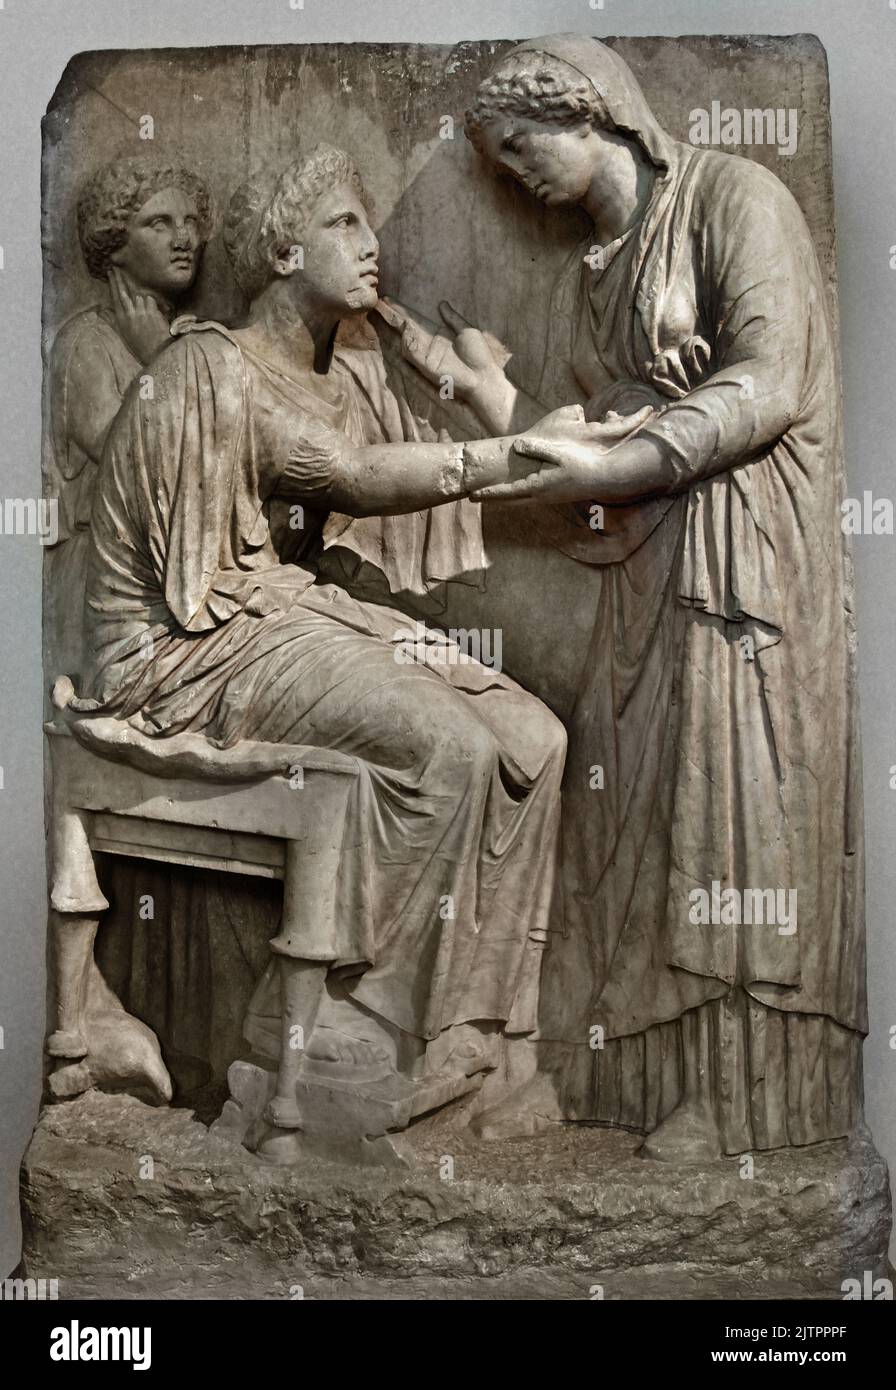 Beerdigung Stele of Farewell 4. Cent. B.C. Archäologisches Nationalmuseum in Athen, gefunden, Omonoia-Platz, Athen. Eine Frau, die auf einem Stuhl sitzt, streckt ihre rechte Hand zu einem stehenden Verwandten, der sie zärtlich am Handgelenk hält und die andere Hand in einer Geste der Rede hebt, links steht ein Mädchen, das in der Reflexion verloren ist. Ein kleines Rebhuhn pickt unter dem Sitz der toten Frau auf den Boden, Stockfoto